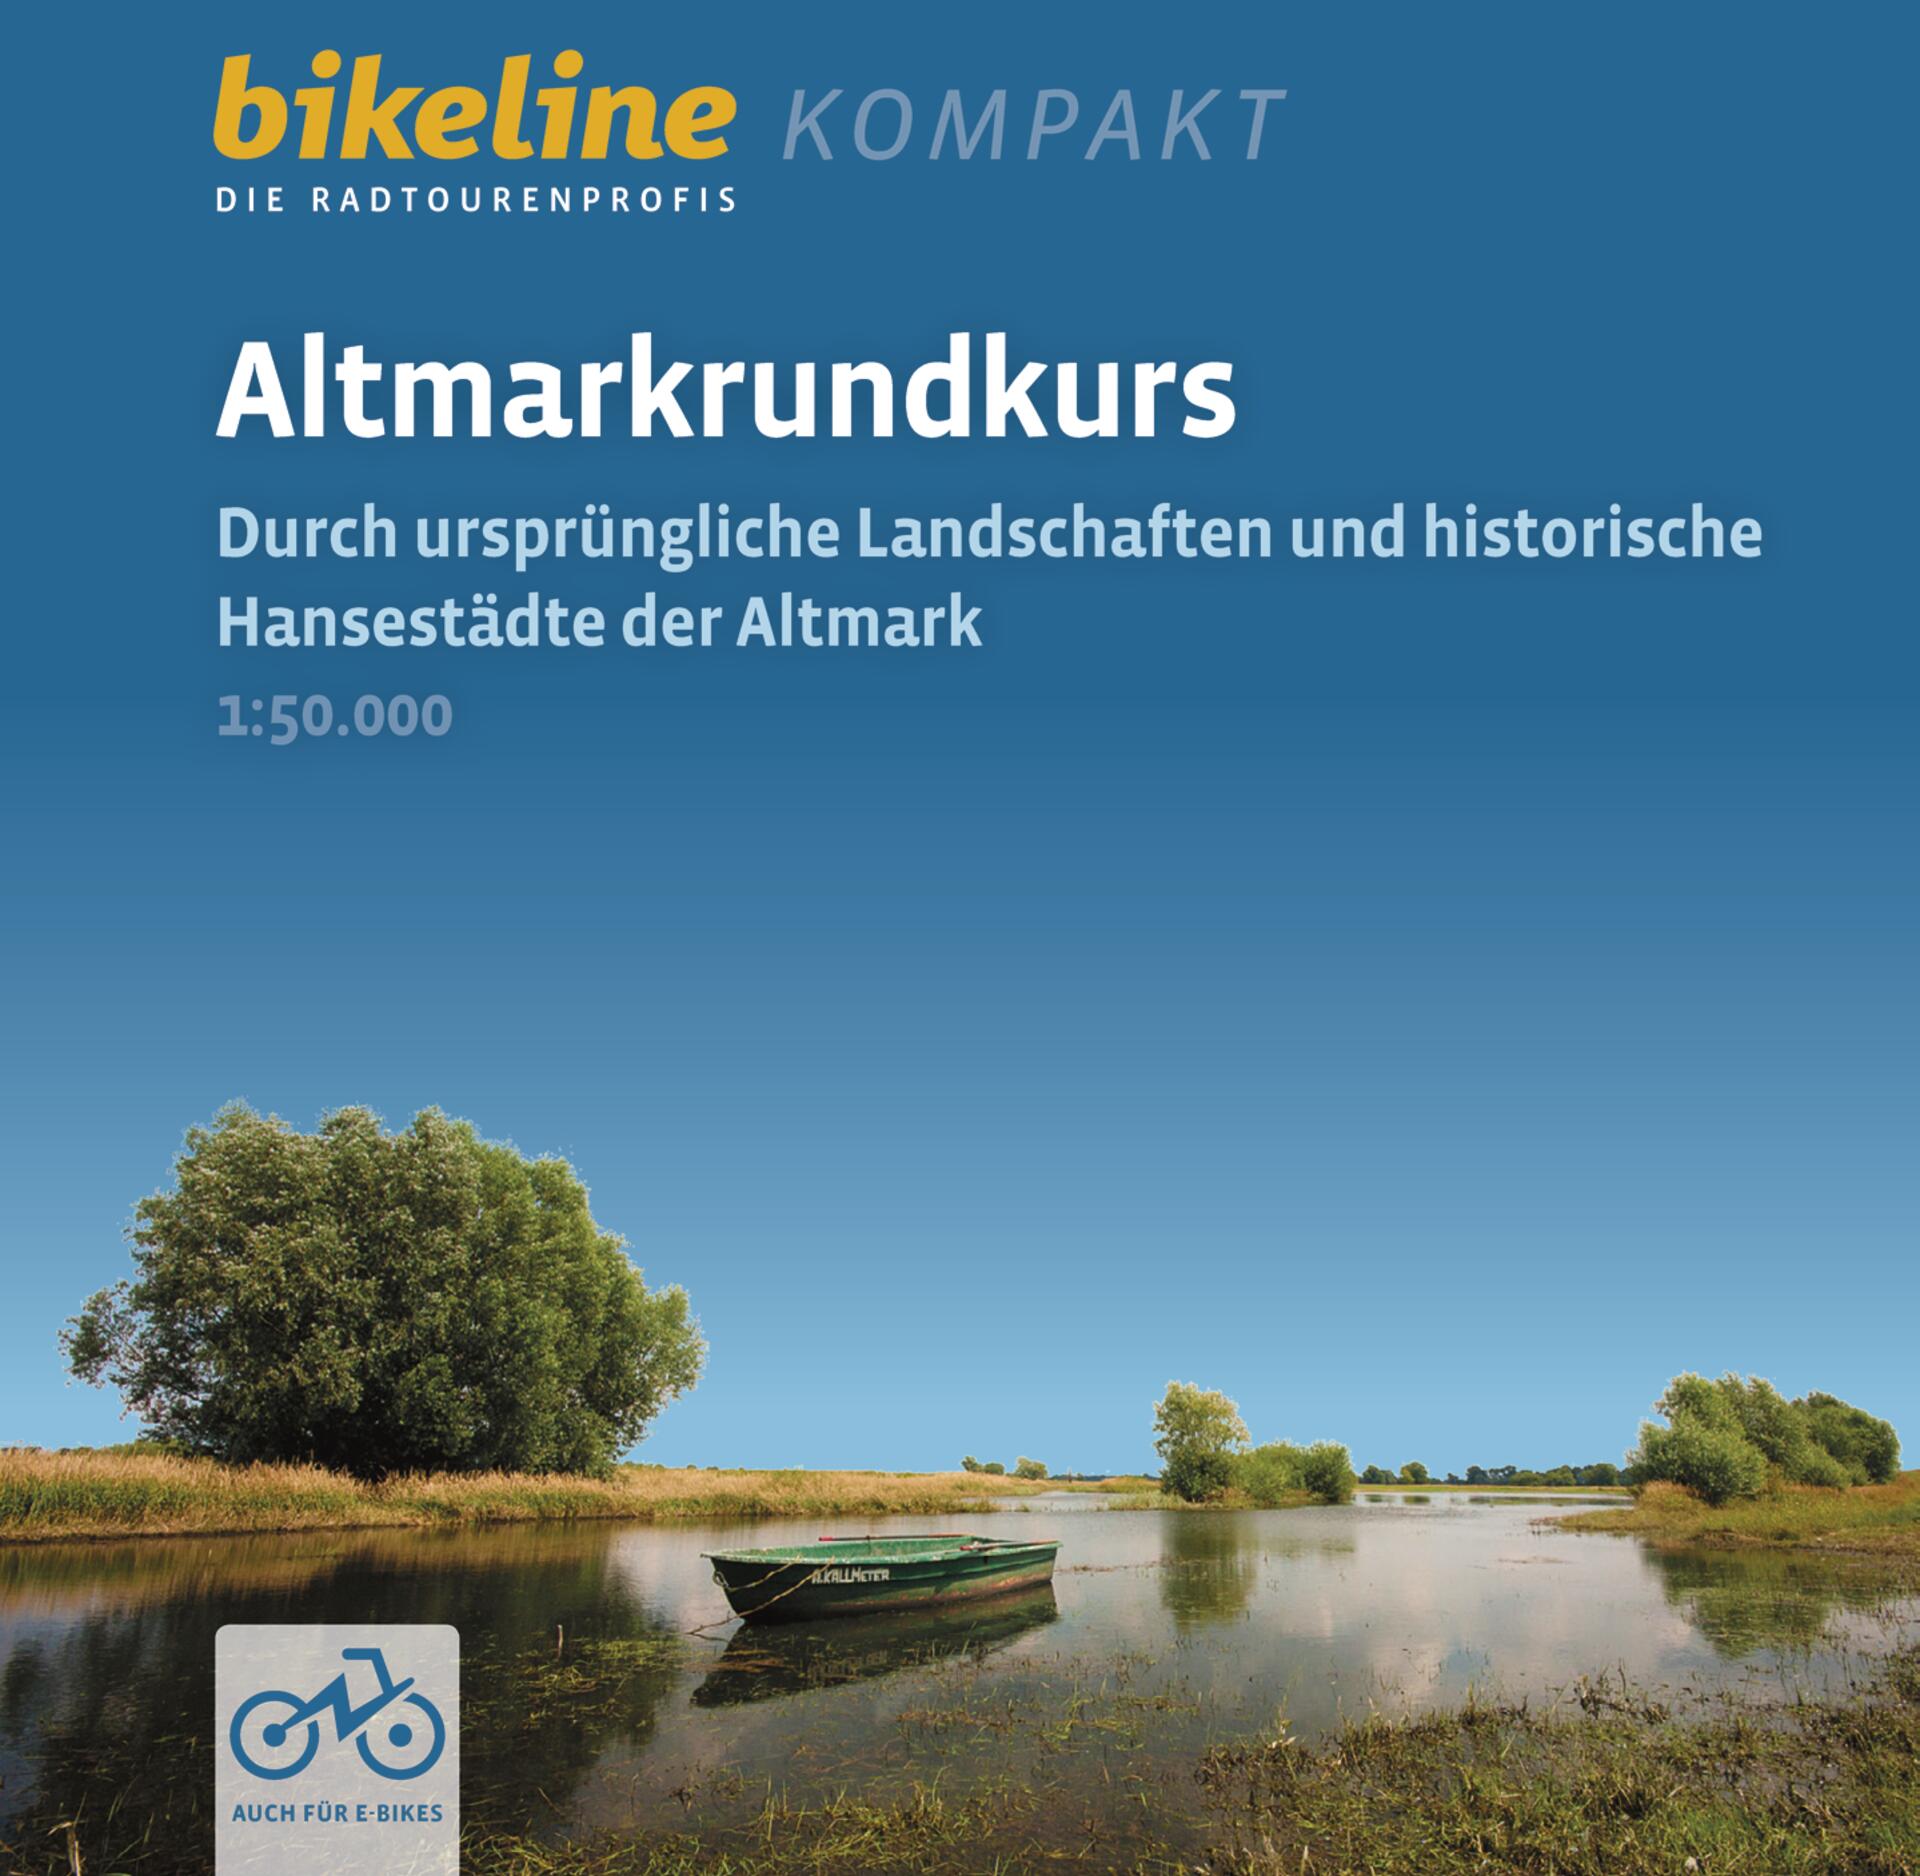 Online bestellen: Fietsgids Bikeline Radtourenbuch kompakt Altmarkrundkurs | Esterbauer